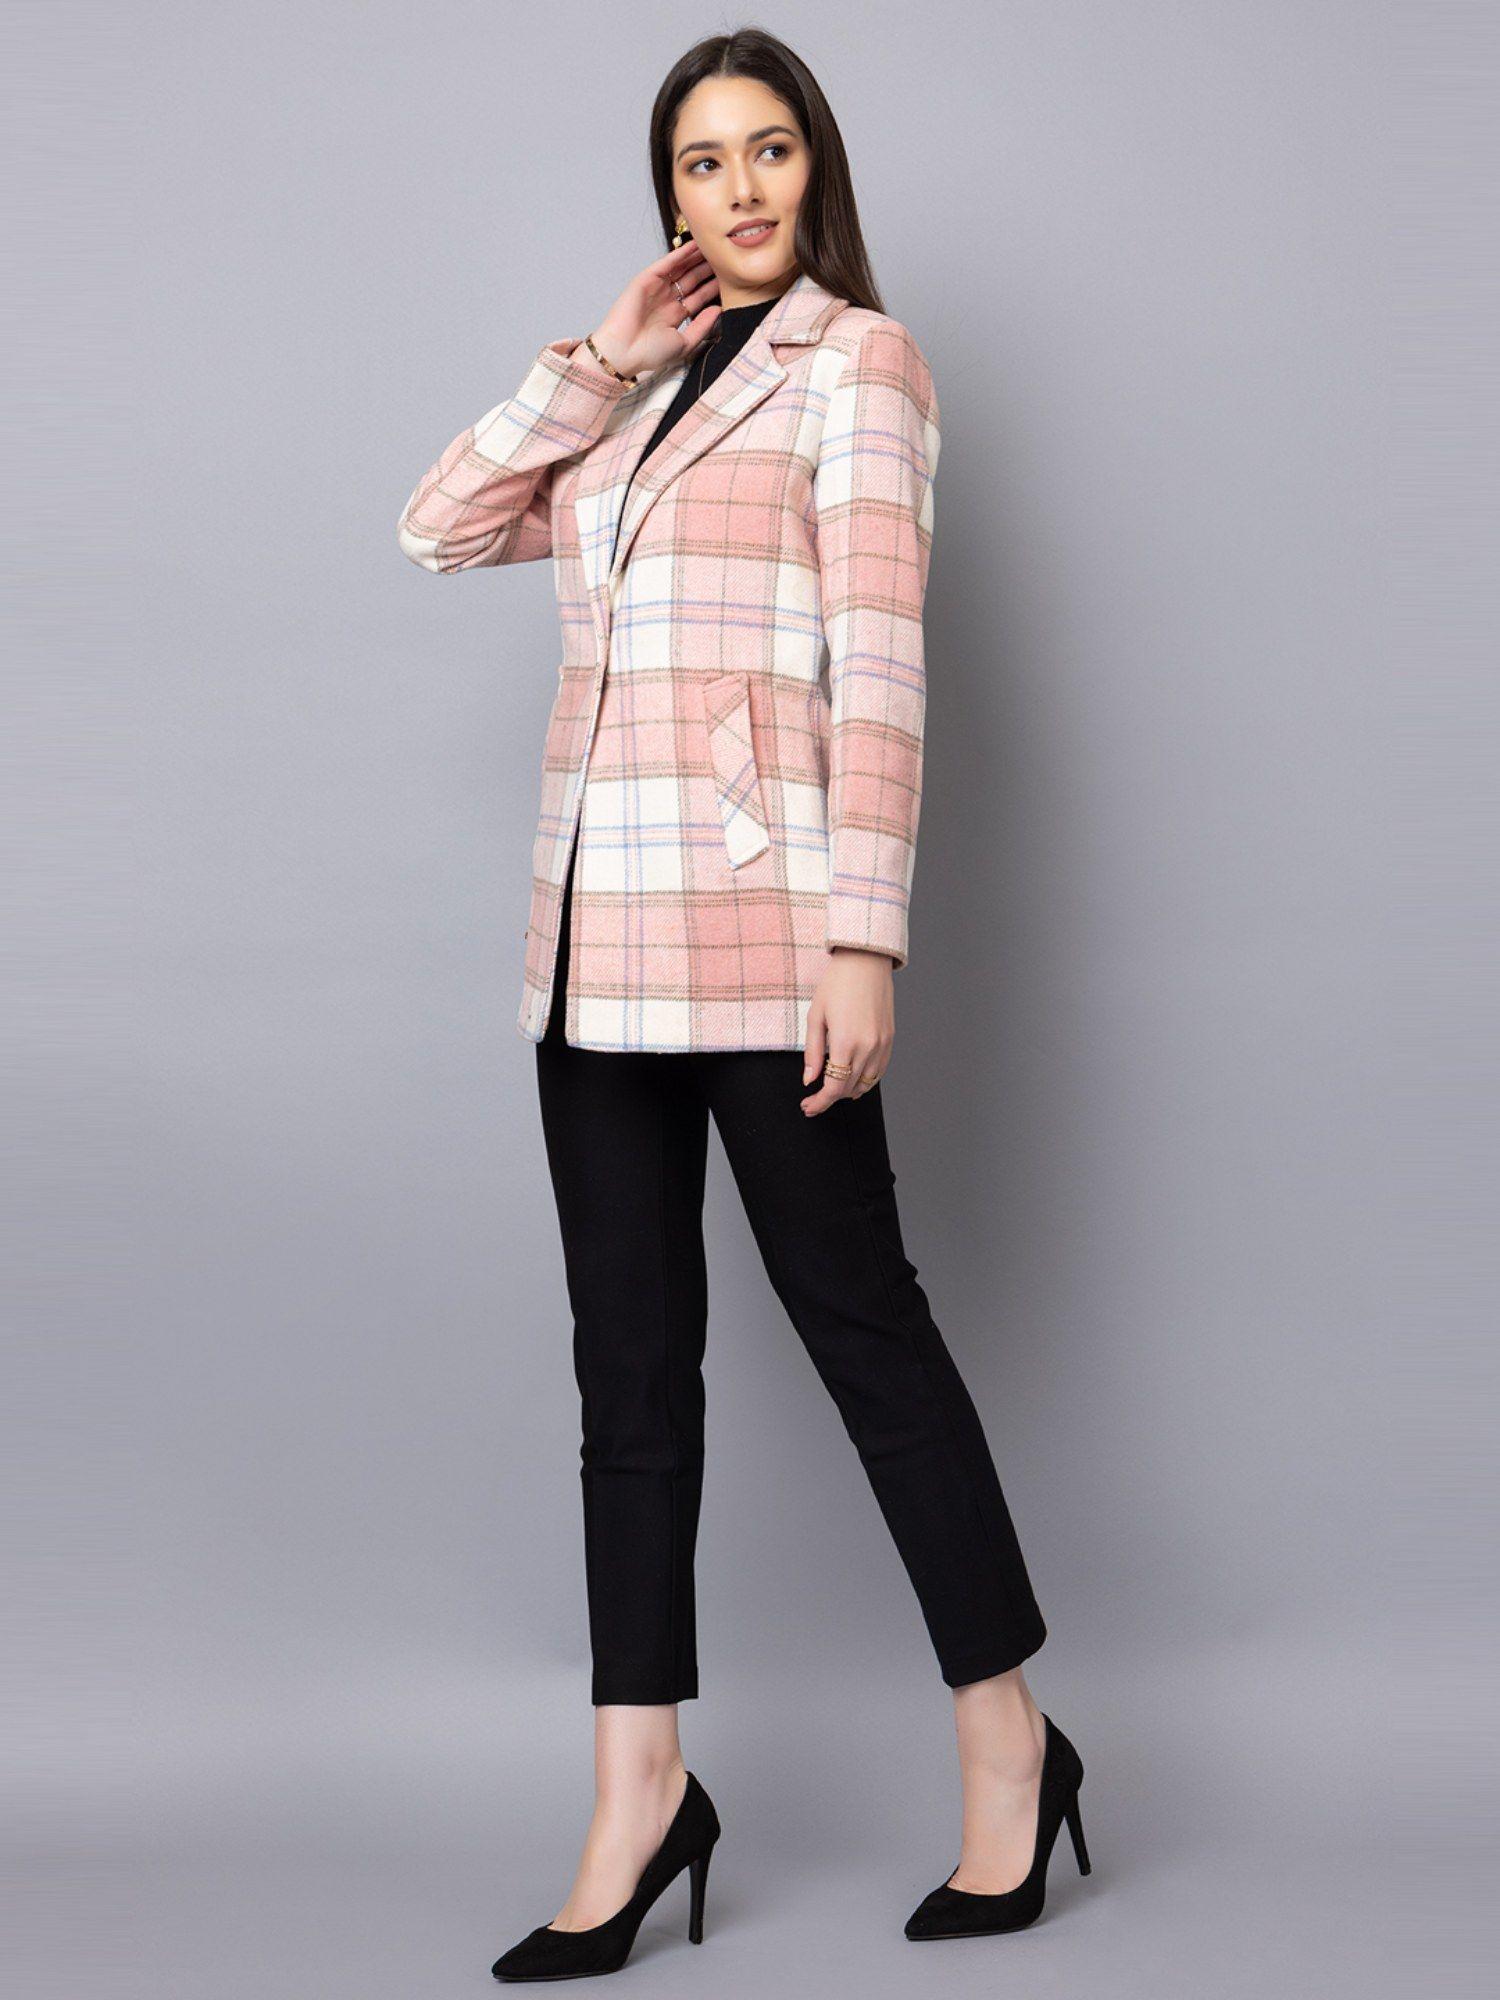 women winter wear stylish pink coat